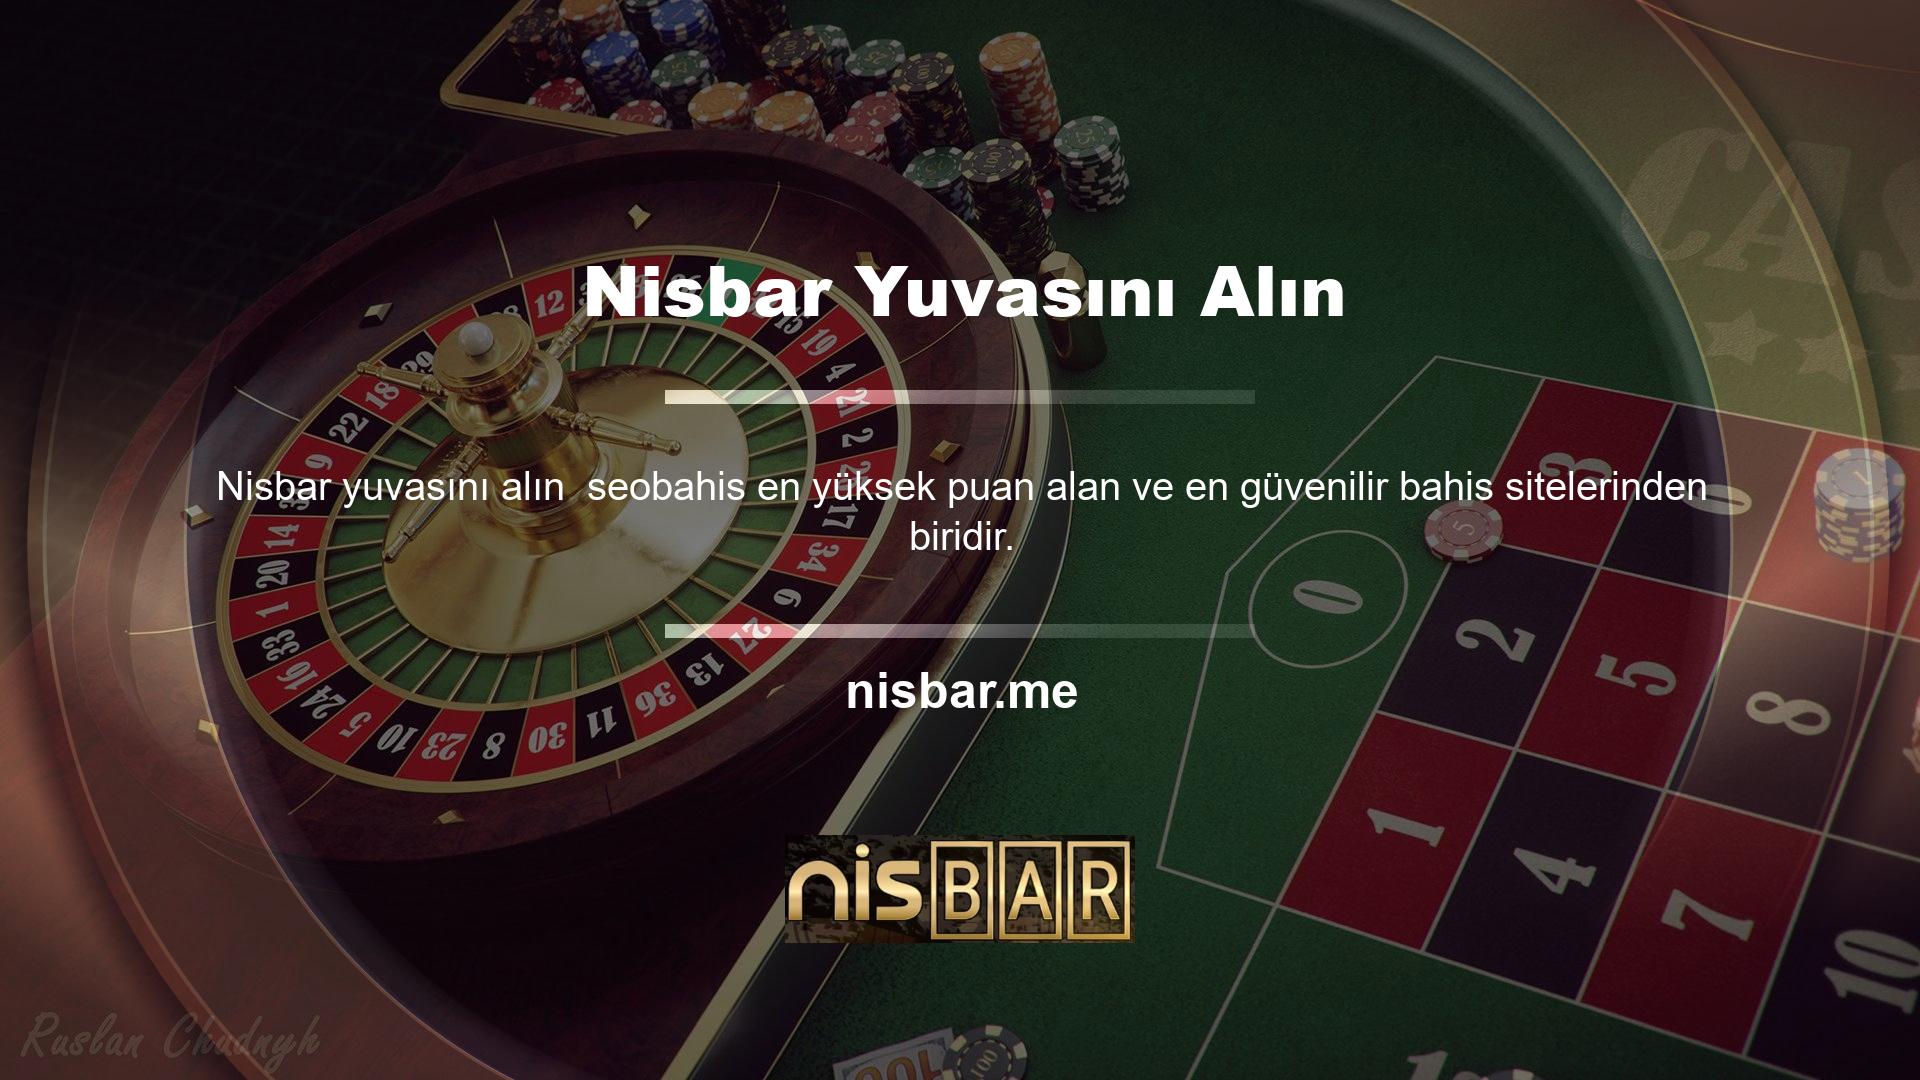 Sonuç olarak Nisbar son derece gelişmiş ödeme yapısıyla sadece sunduğu casino oyunlarından değil, slot makinelerinden de yüksek kazançlar elde etmektedir